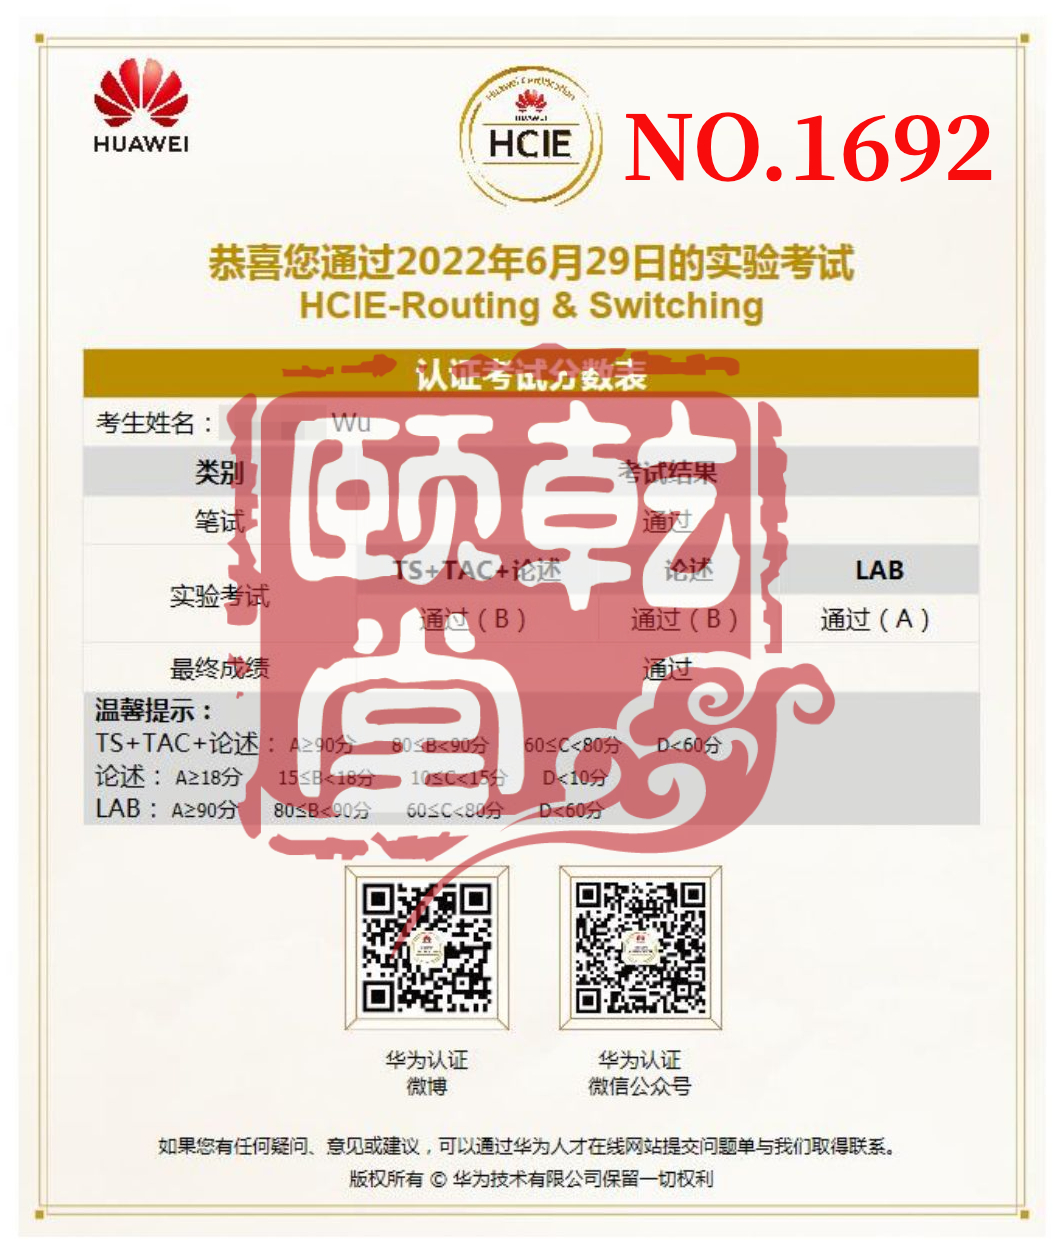 HCIE RS 吴 6.29.jpg